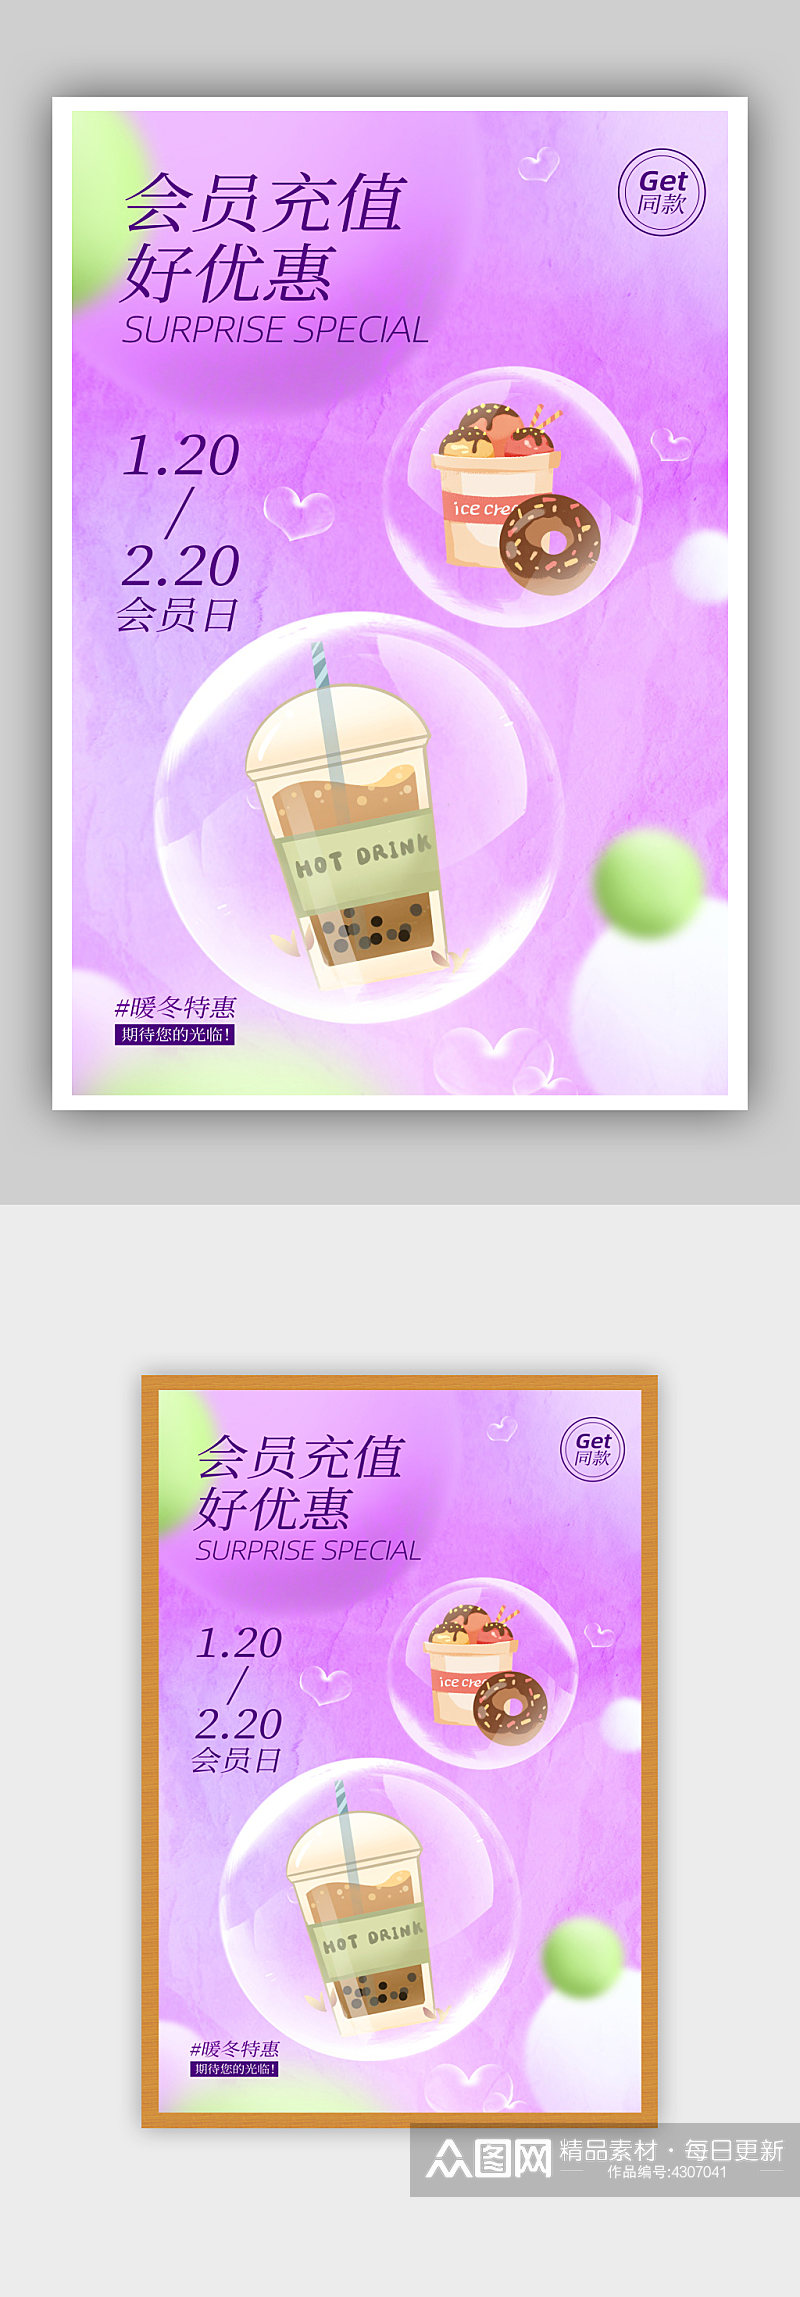 紫色梦幻简约美食甜品会员充值促销海报素材